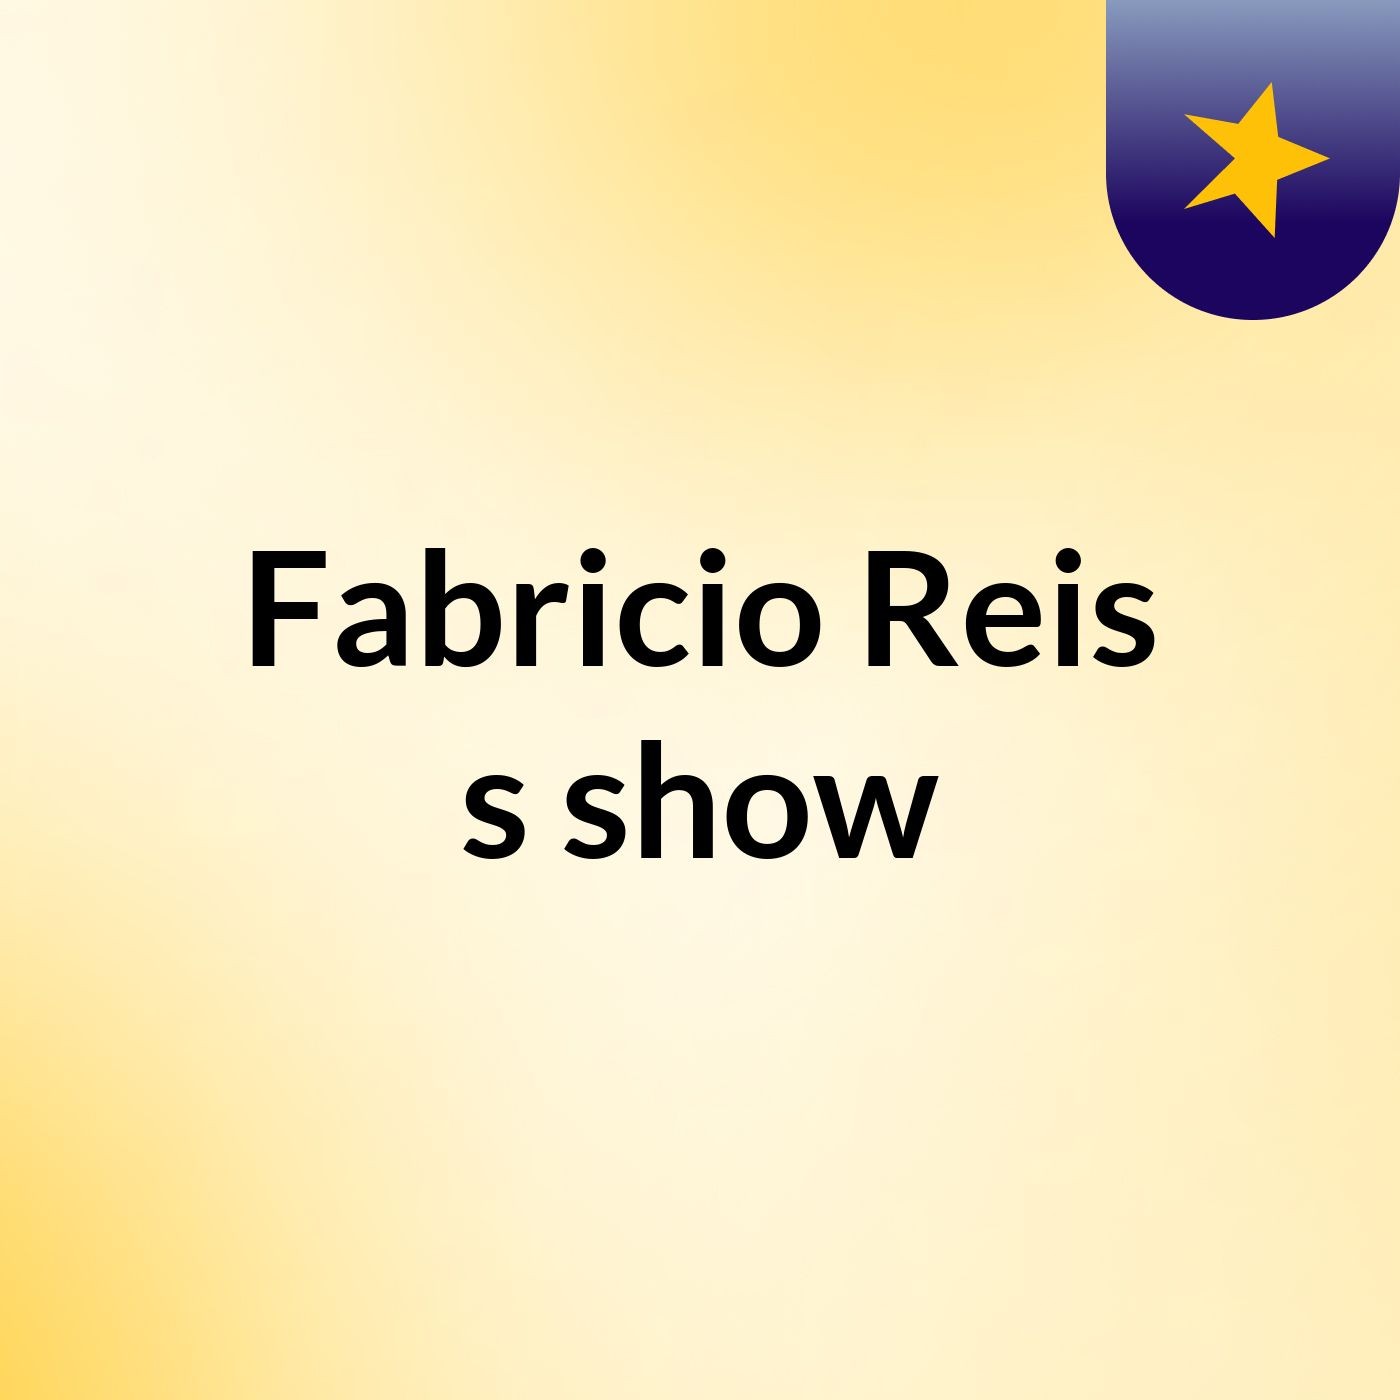 Fabricio Reis's show